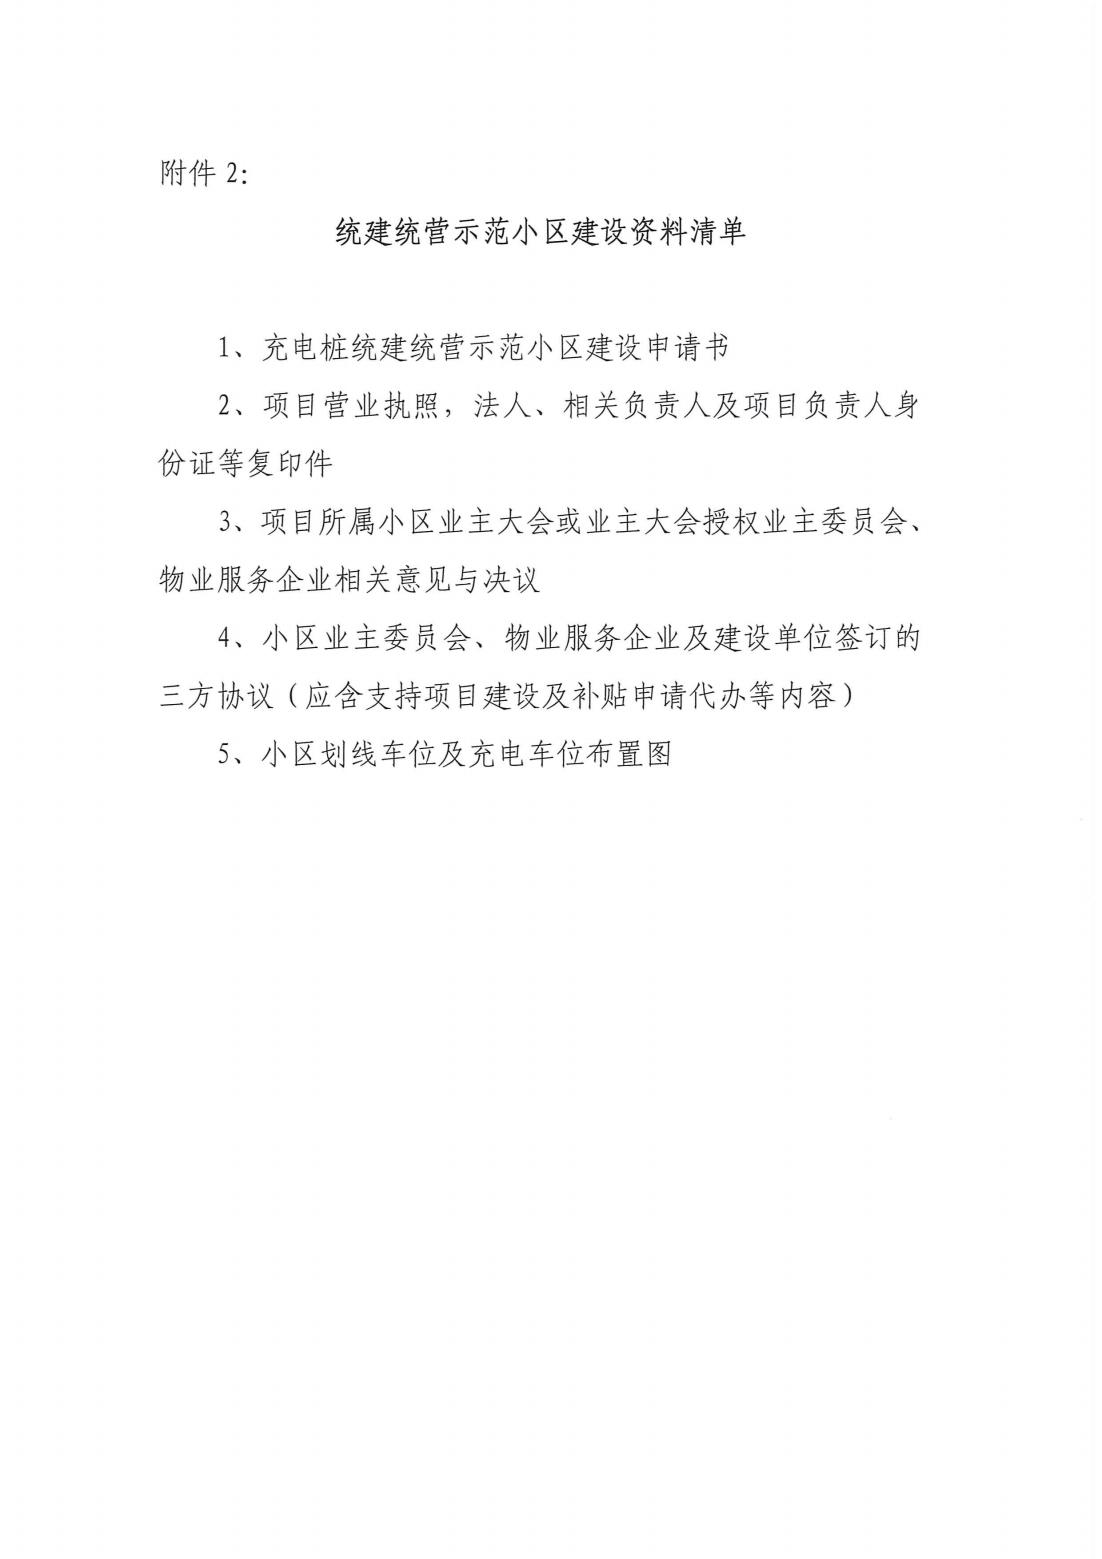 11红头文件-2023年度上海市充电设施“统建统营”示范小区的建设要求-新_10